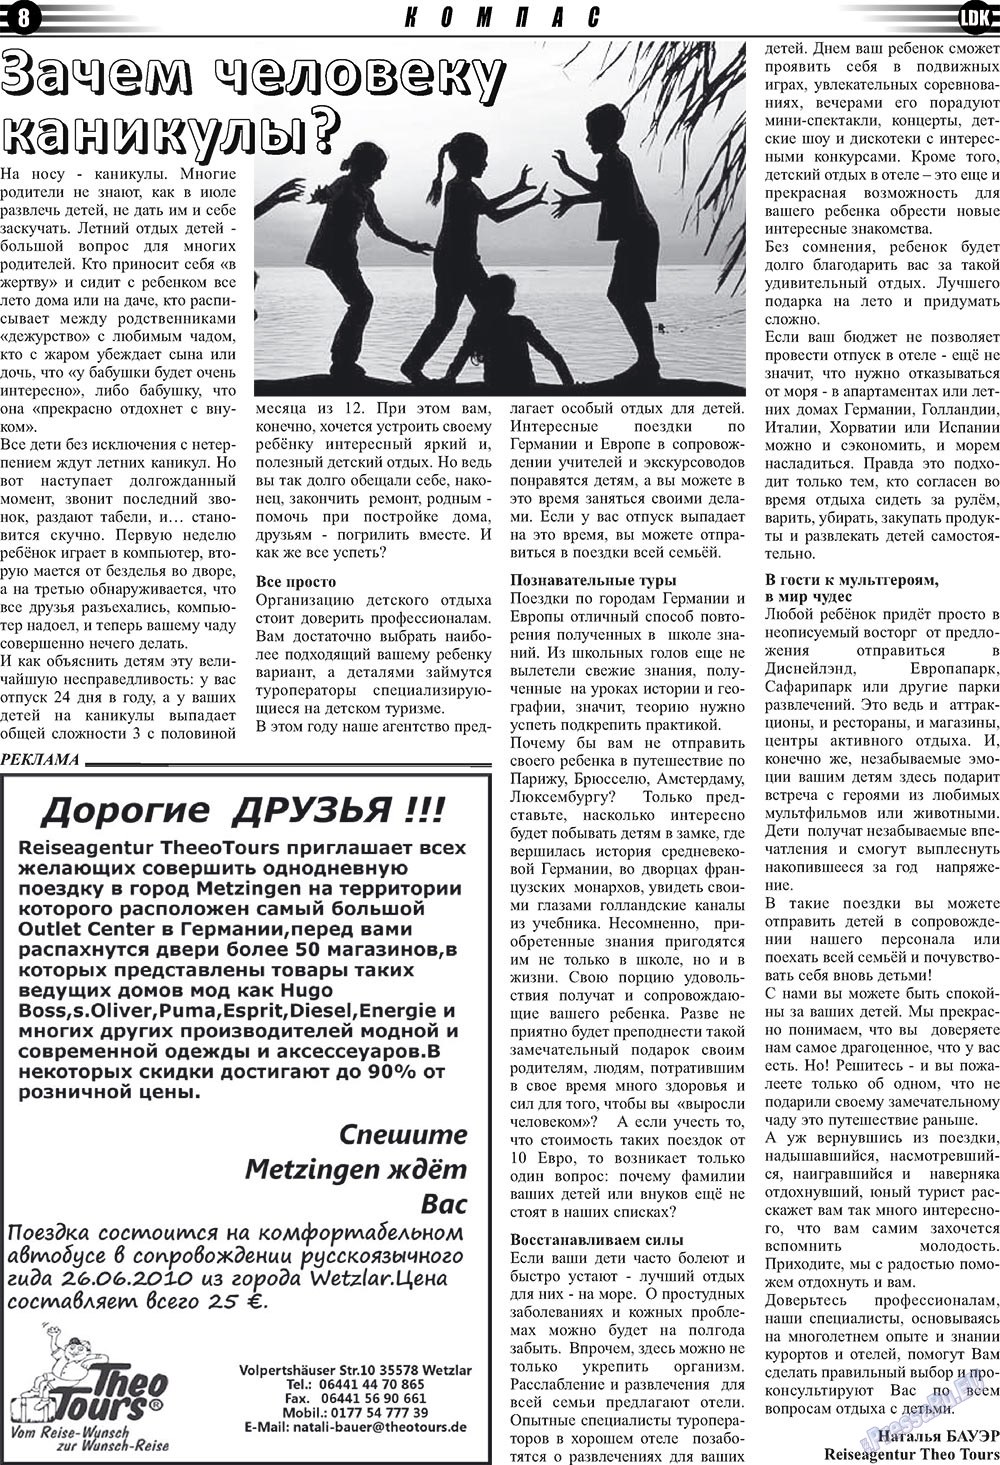 LDK по-русски (газета). 2010 год, номер 6, стр. 8